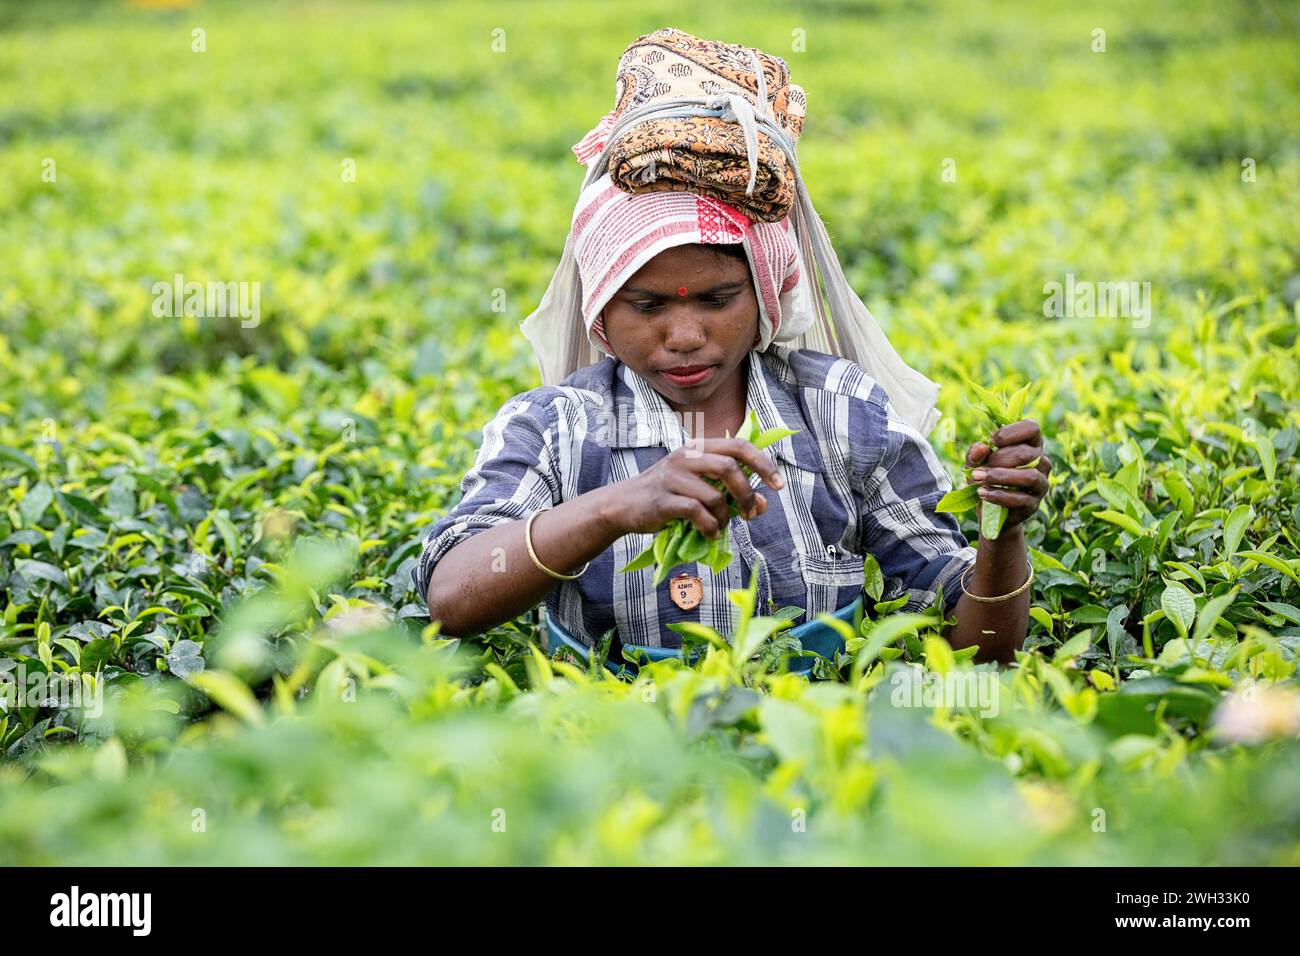 Donna del posto che lavora in una piantagione di tè, il suo lavoro quotidiano, raccogliendo foglie di tè in un'enorme piantagione di tè vicino a Dibrugarh in Assam, India Foto Stock